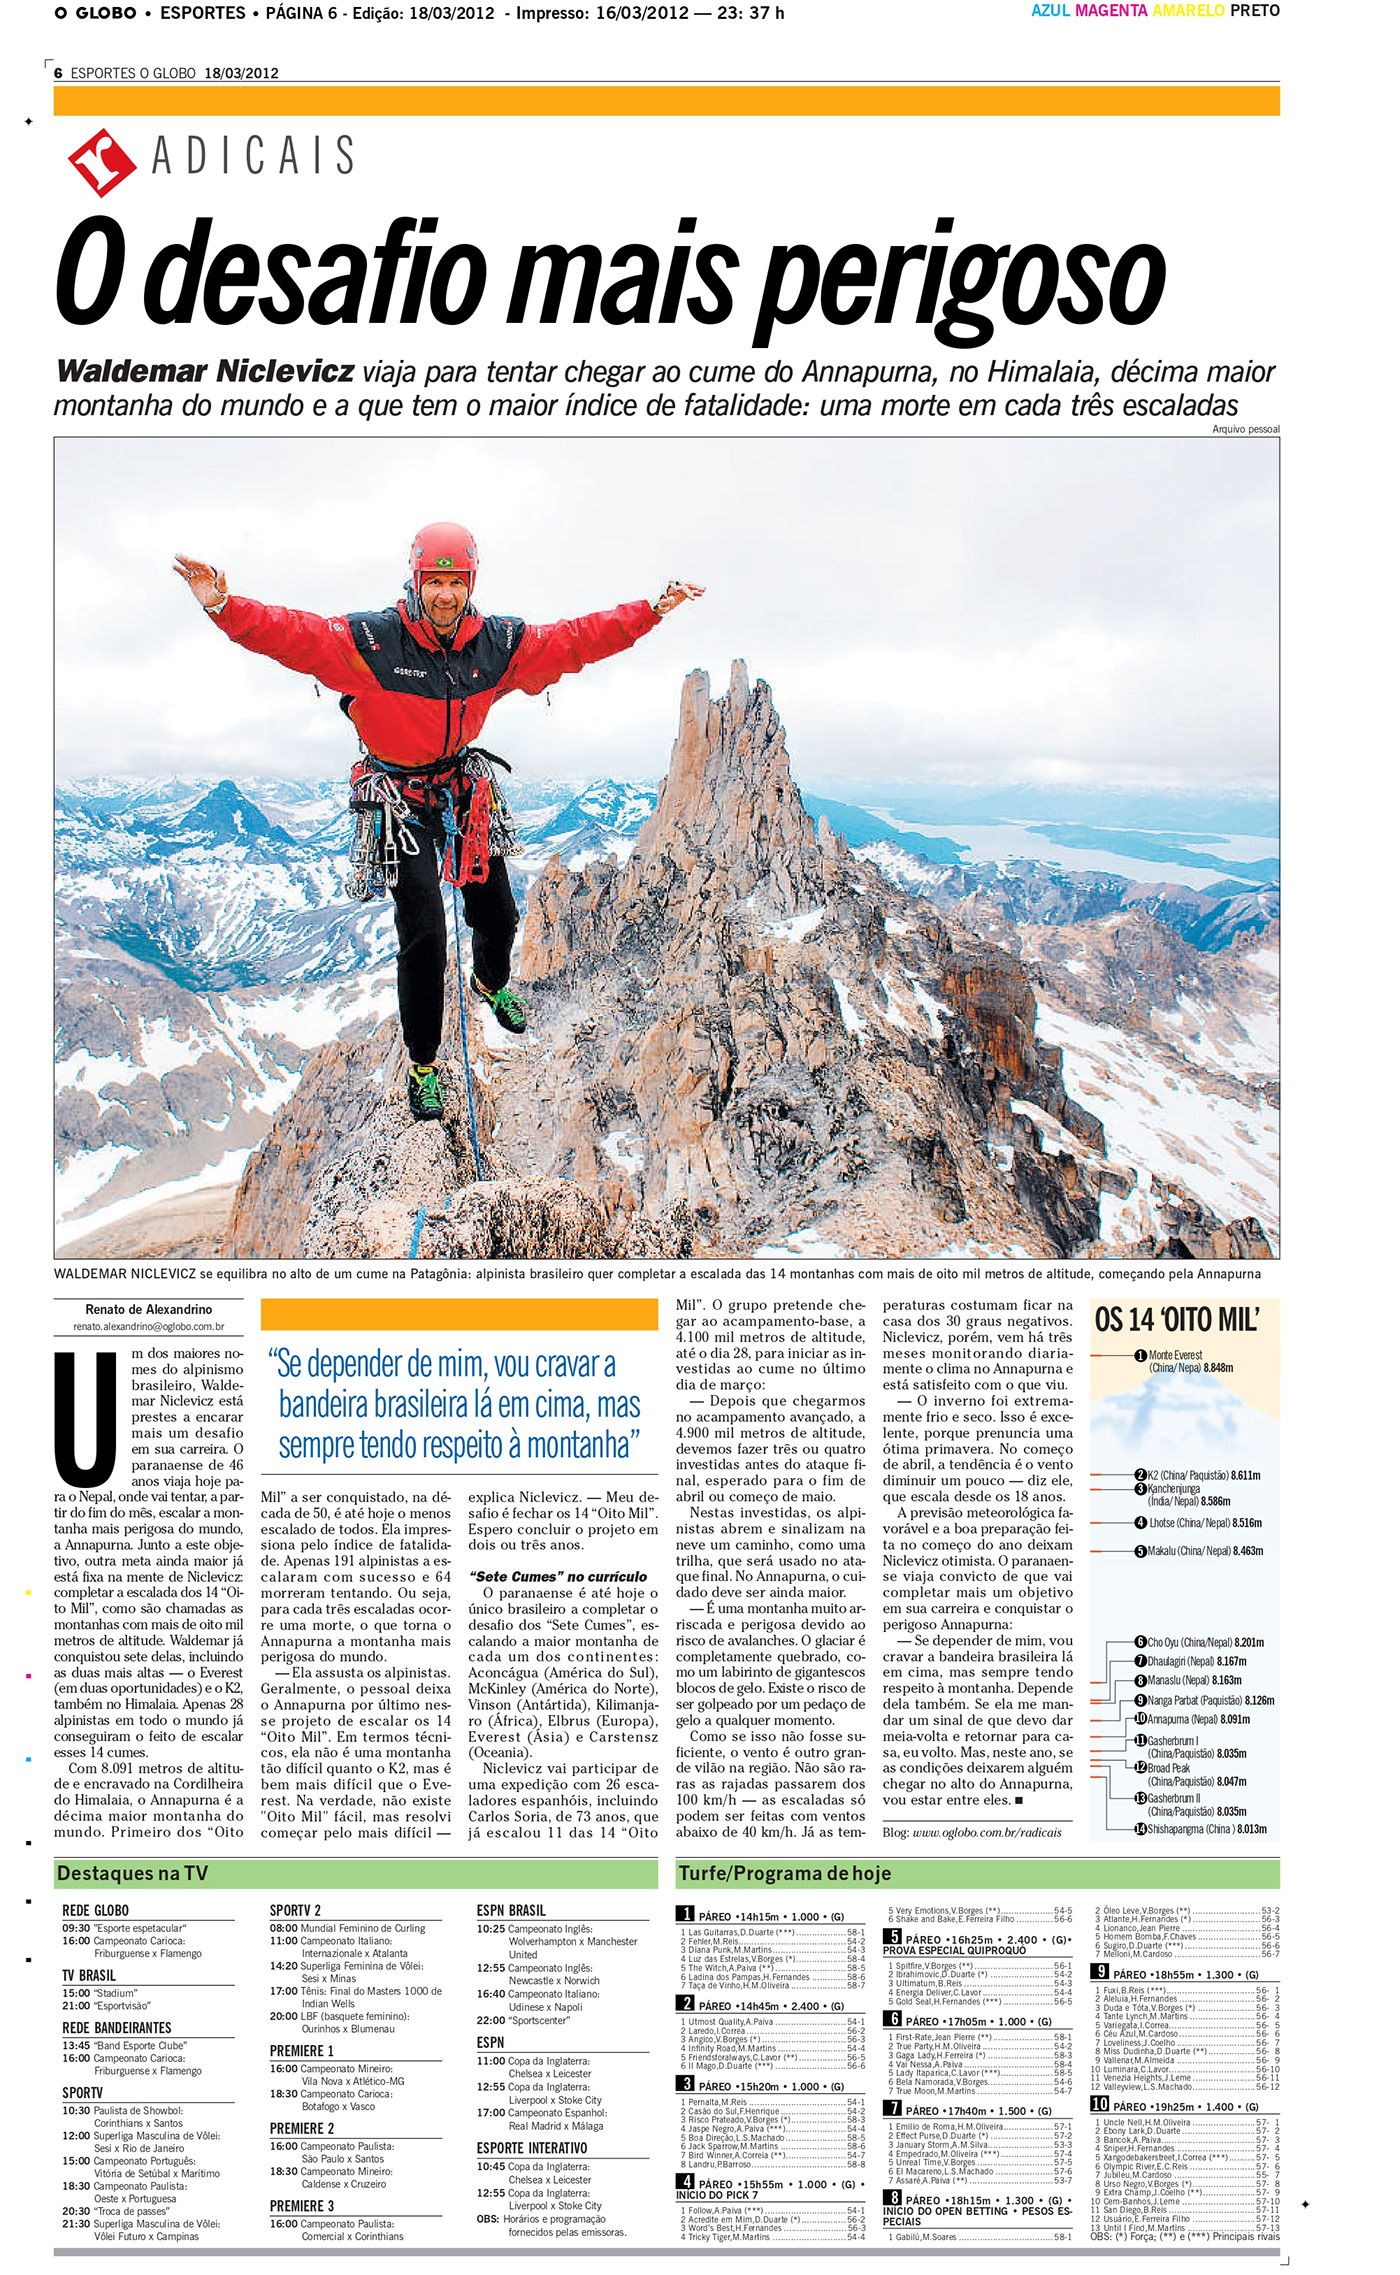 slackline alpinismo Bodyboard jornalismo Entrevista Redação bmx